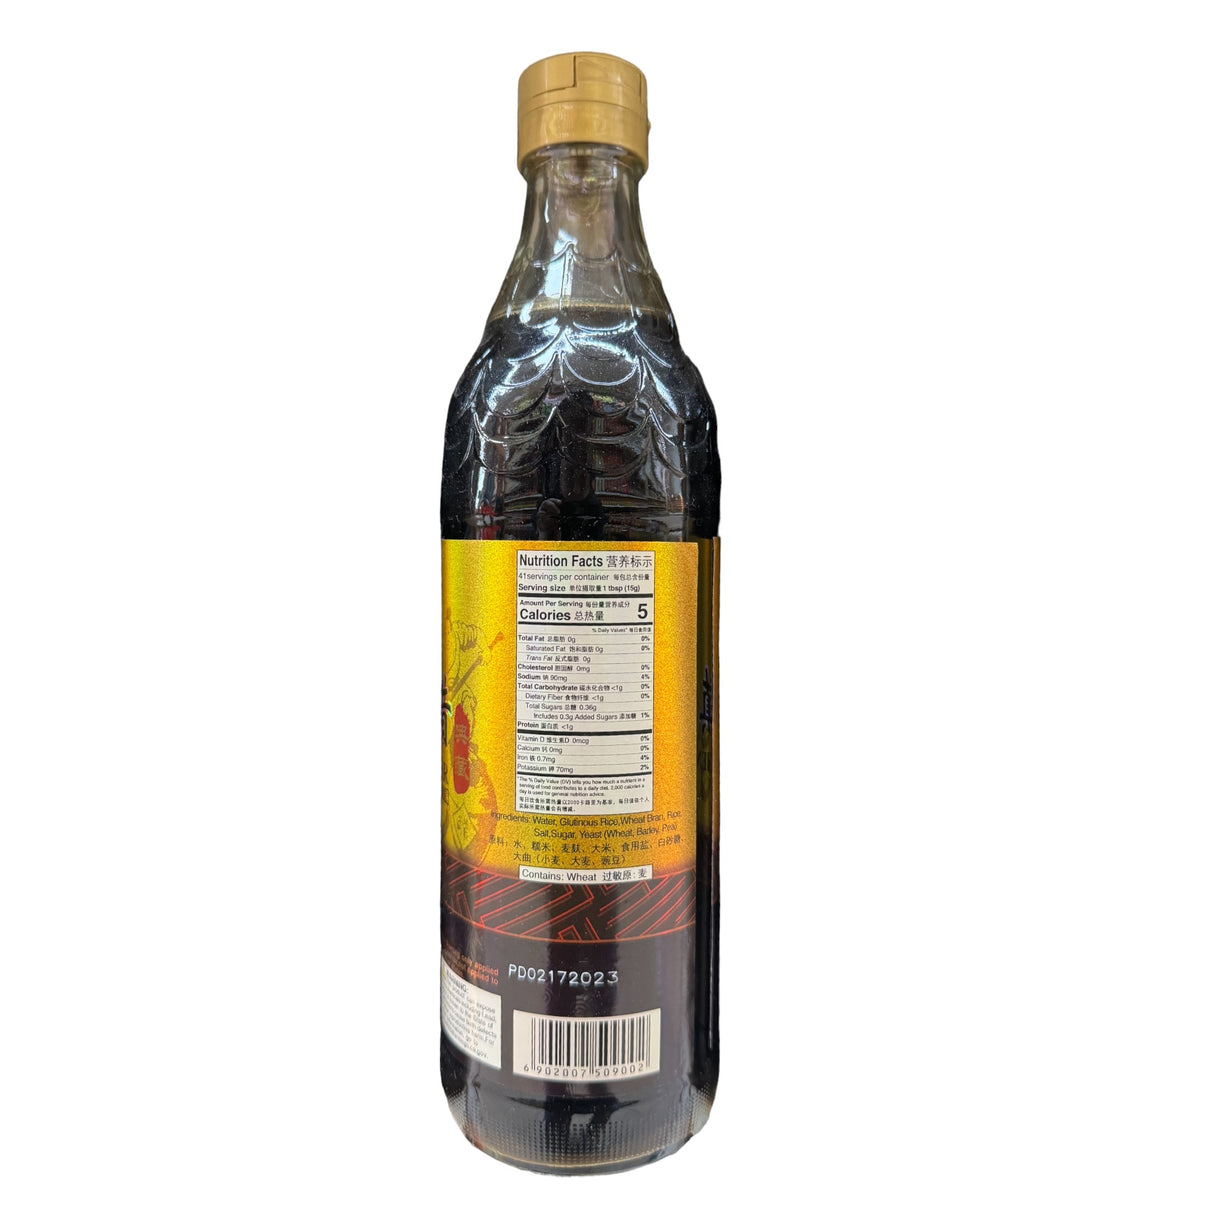 Hengshun Brand (Chinkiang) Zhenjiang Vinegar 6 Year Aged